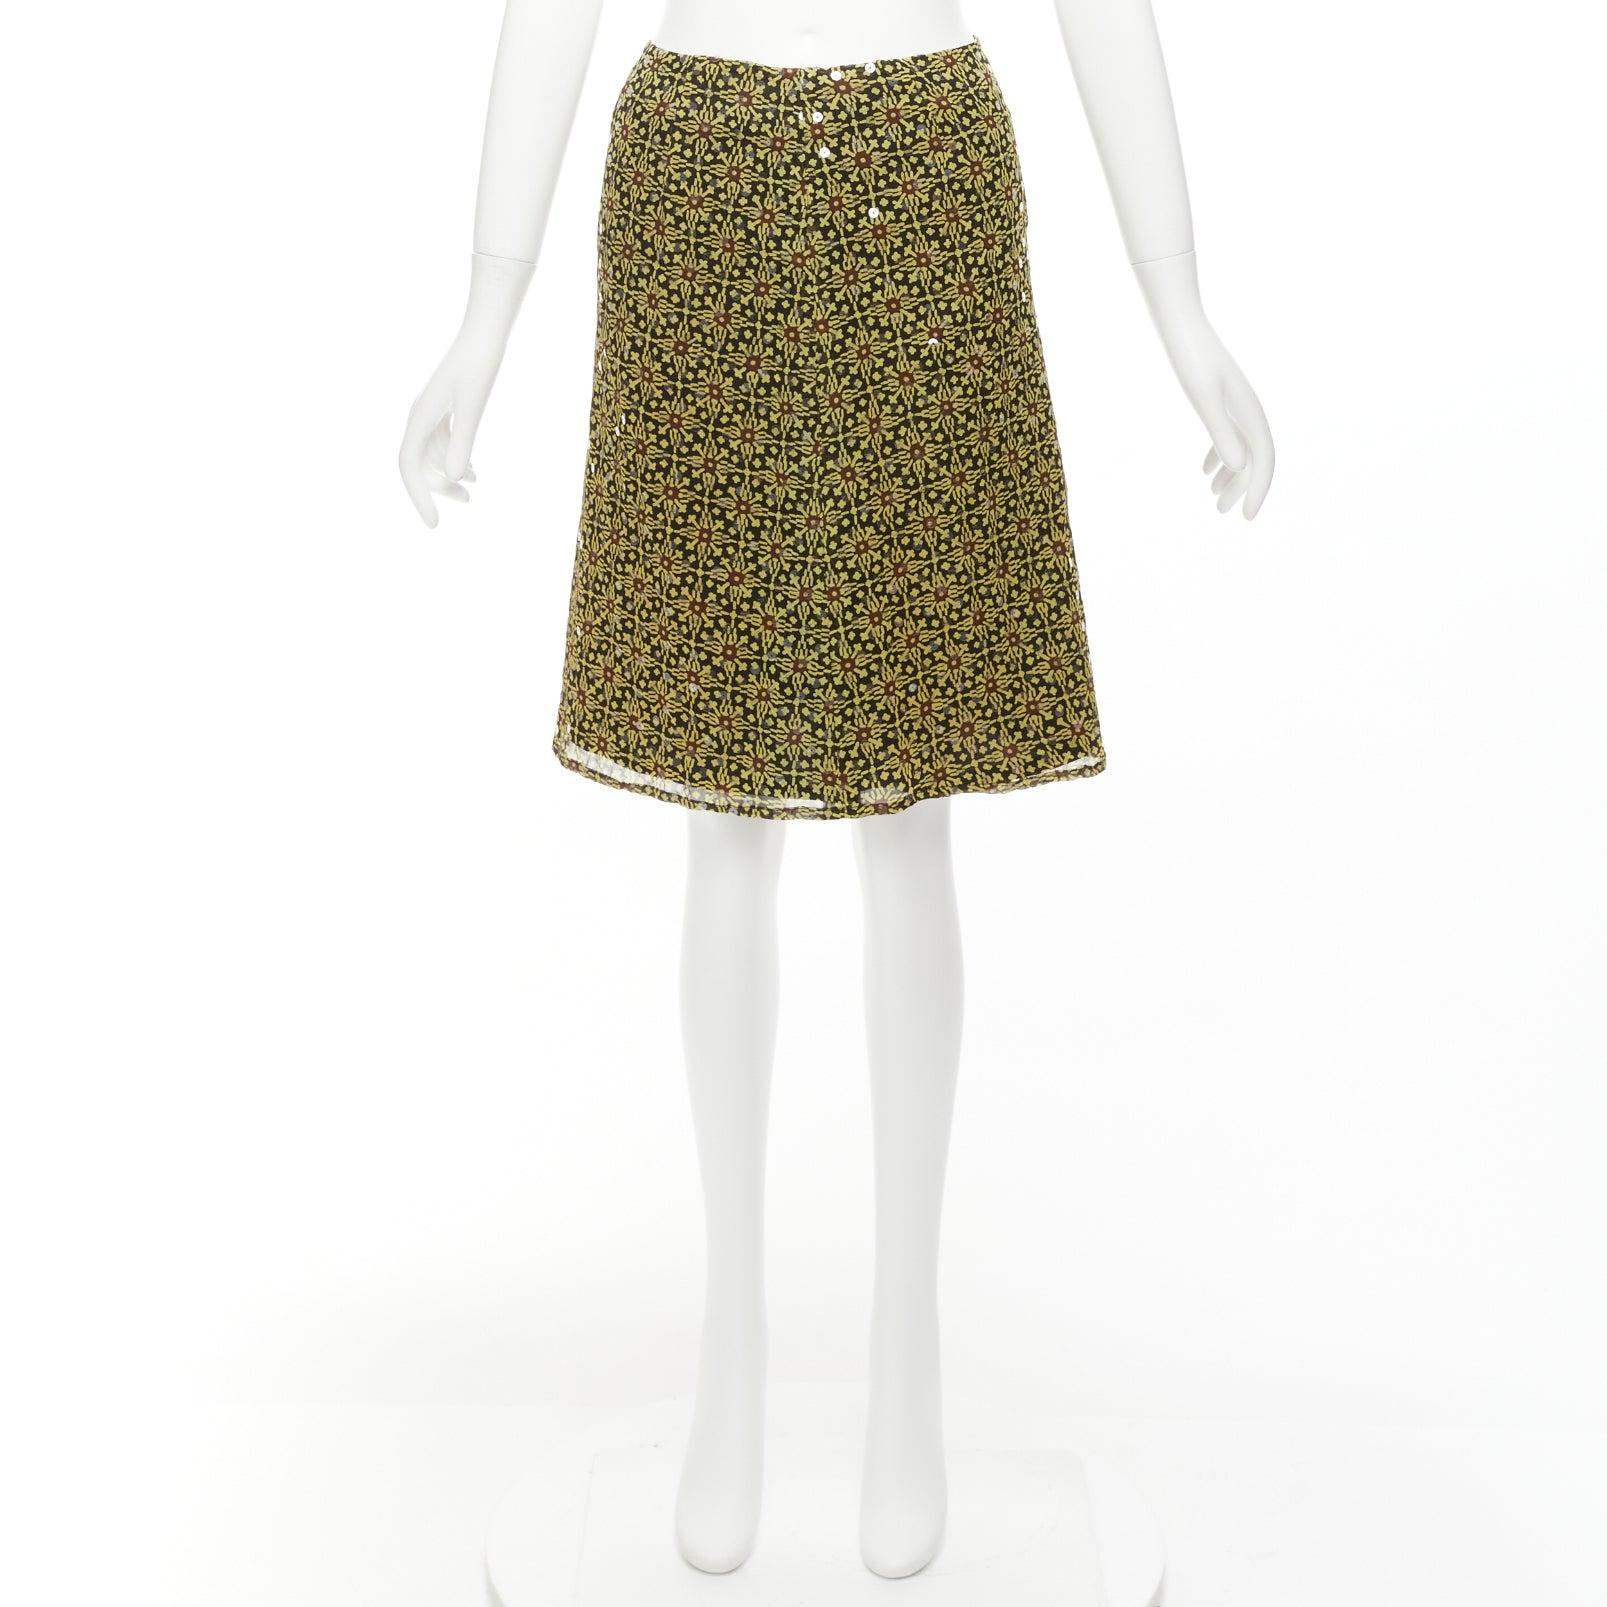 VERSUS Vintage 100% silk yellow black sequins mid rise knee skirt 26